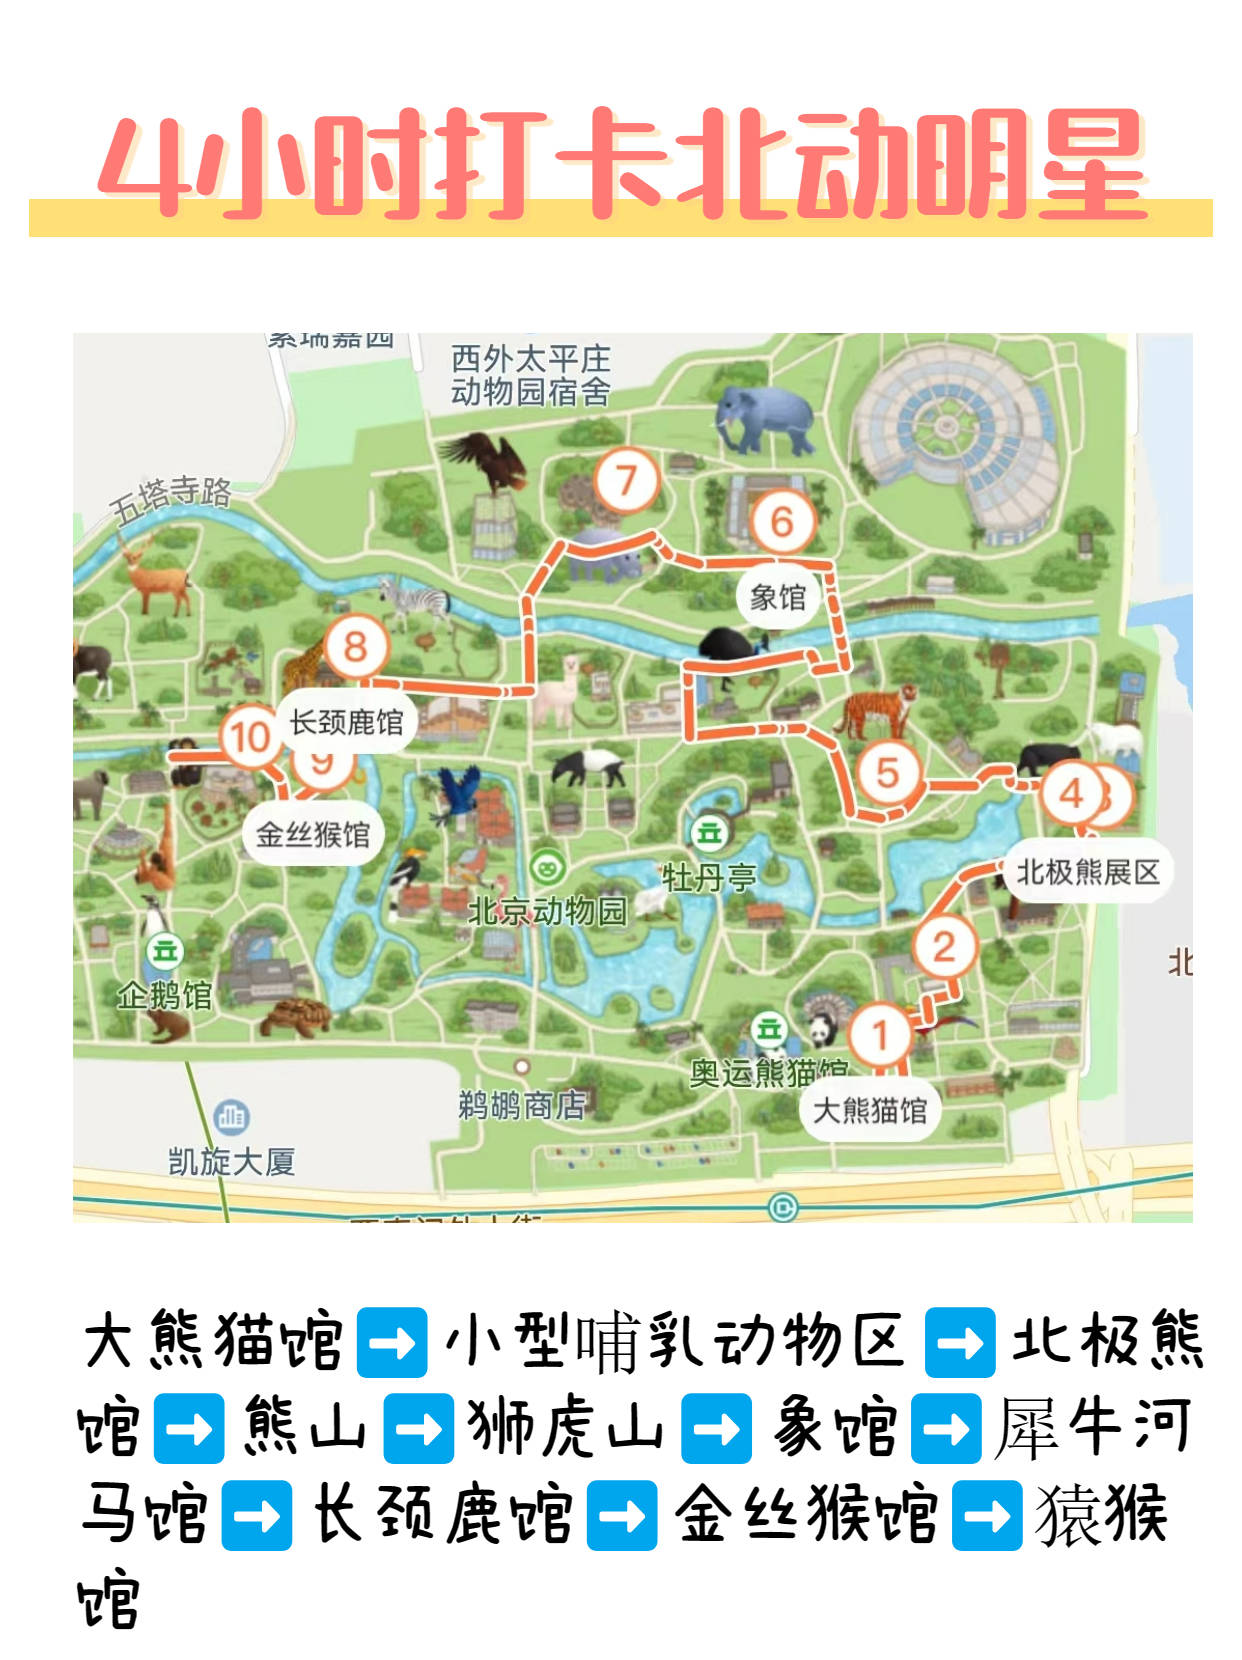 北京动物园游览路线,北京动物园行李寄存,北京动物园隐藏玩法!